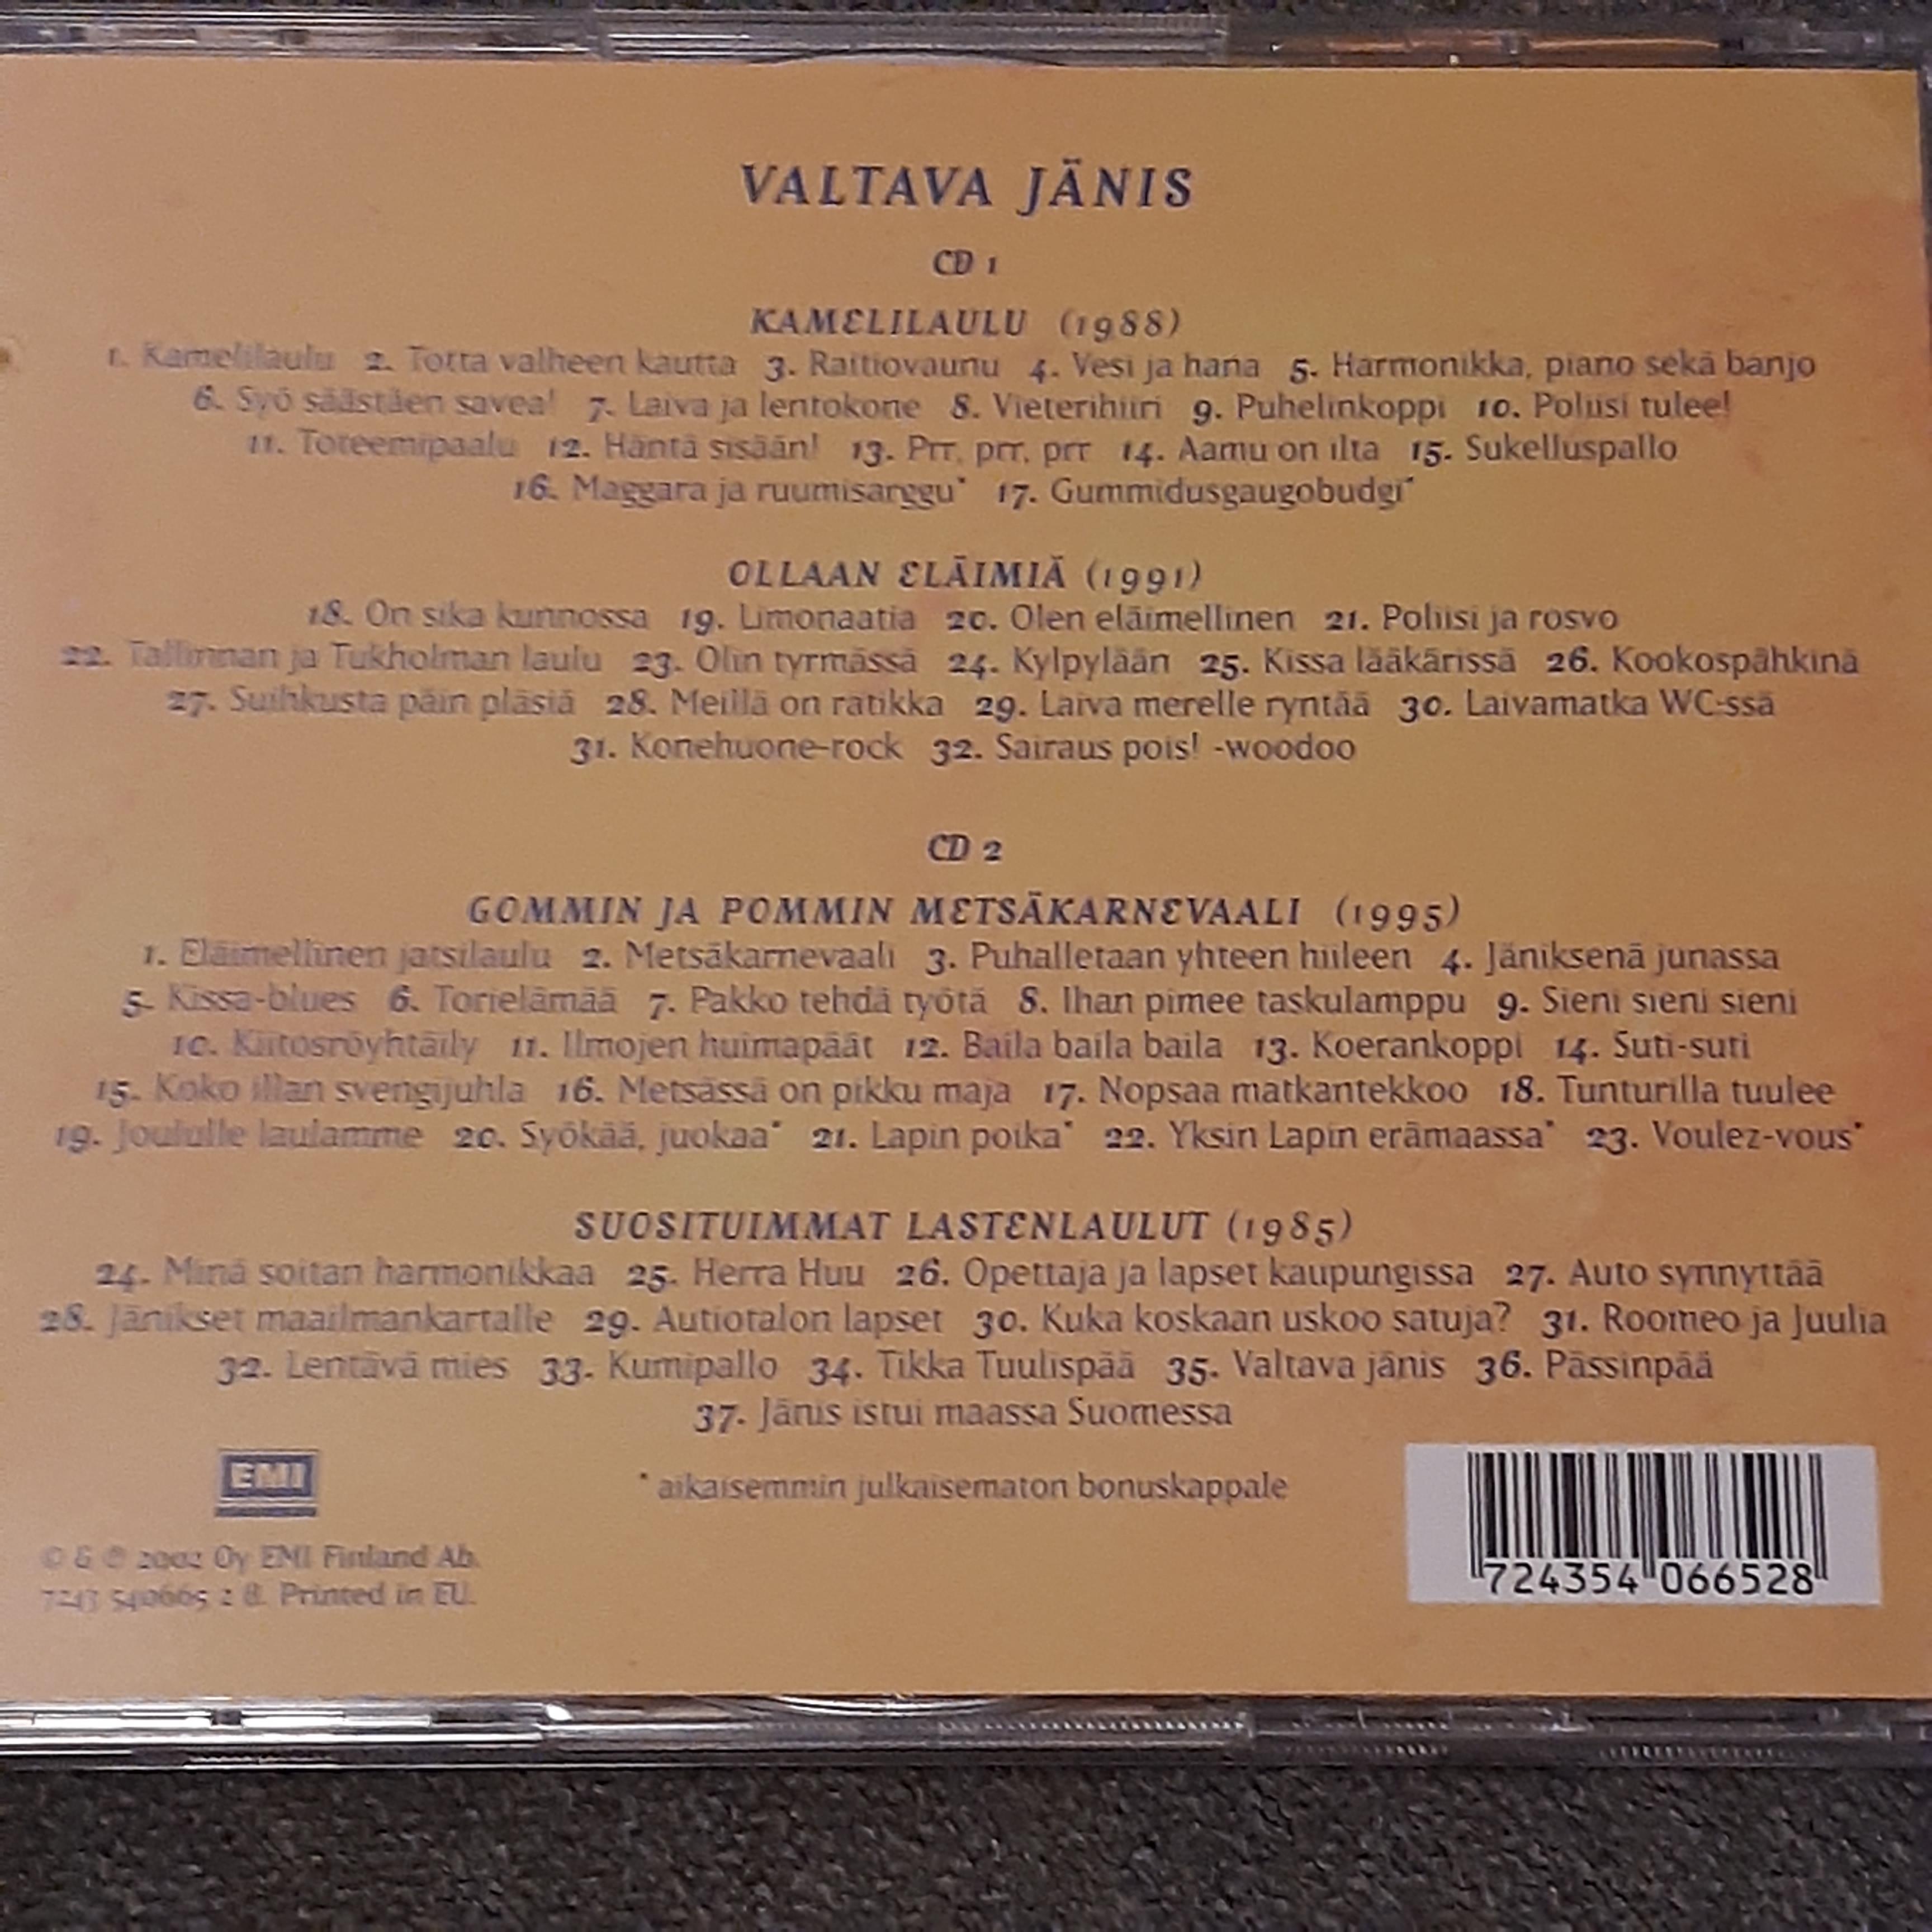 M.A. Numminen - Valtava jänis - 2 CD (uusi)